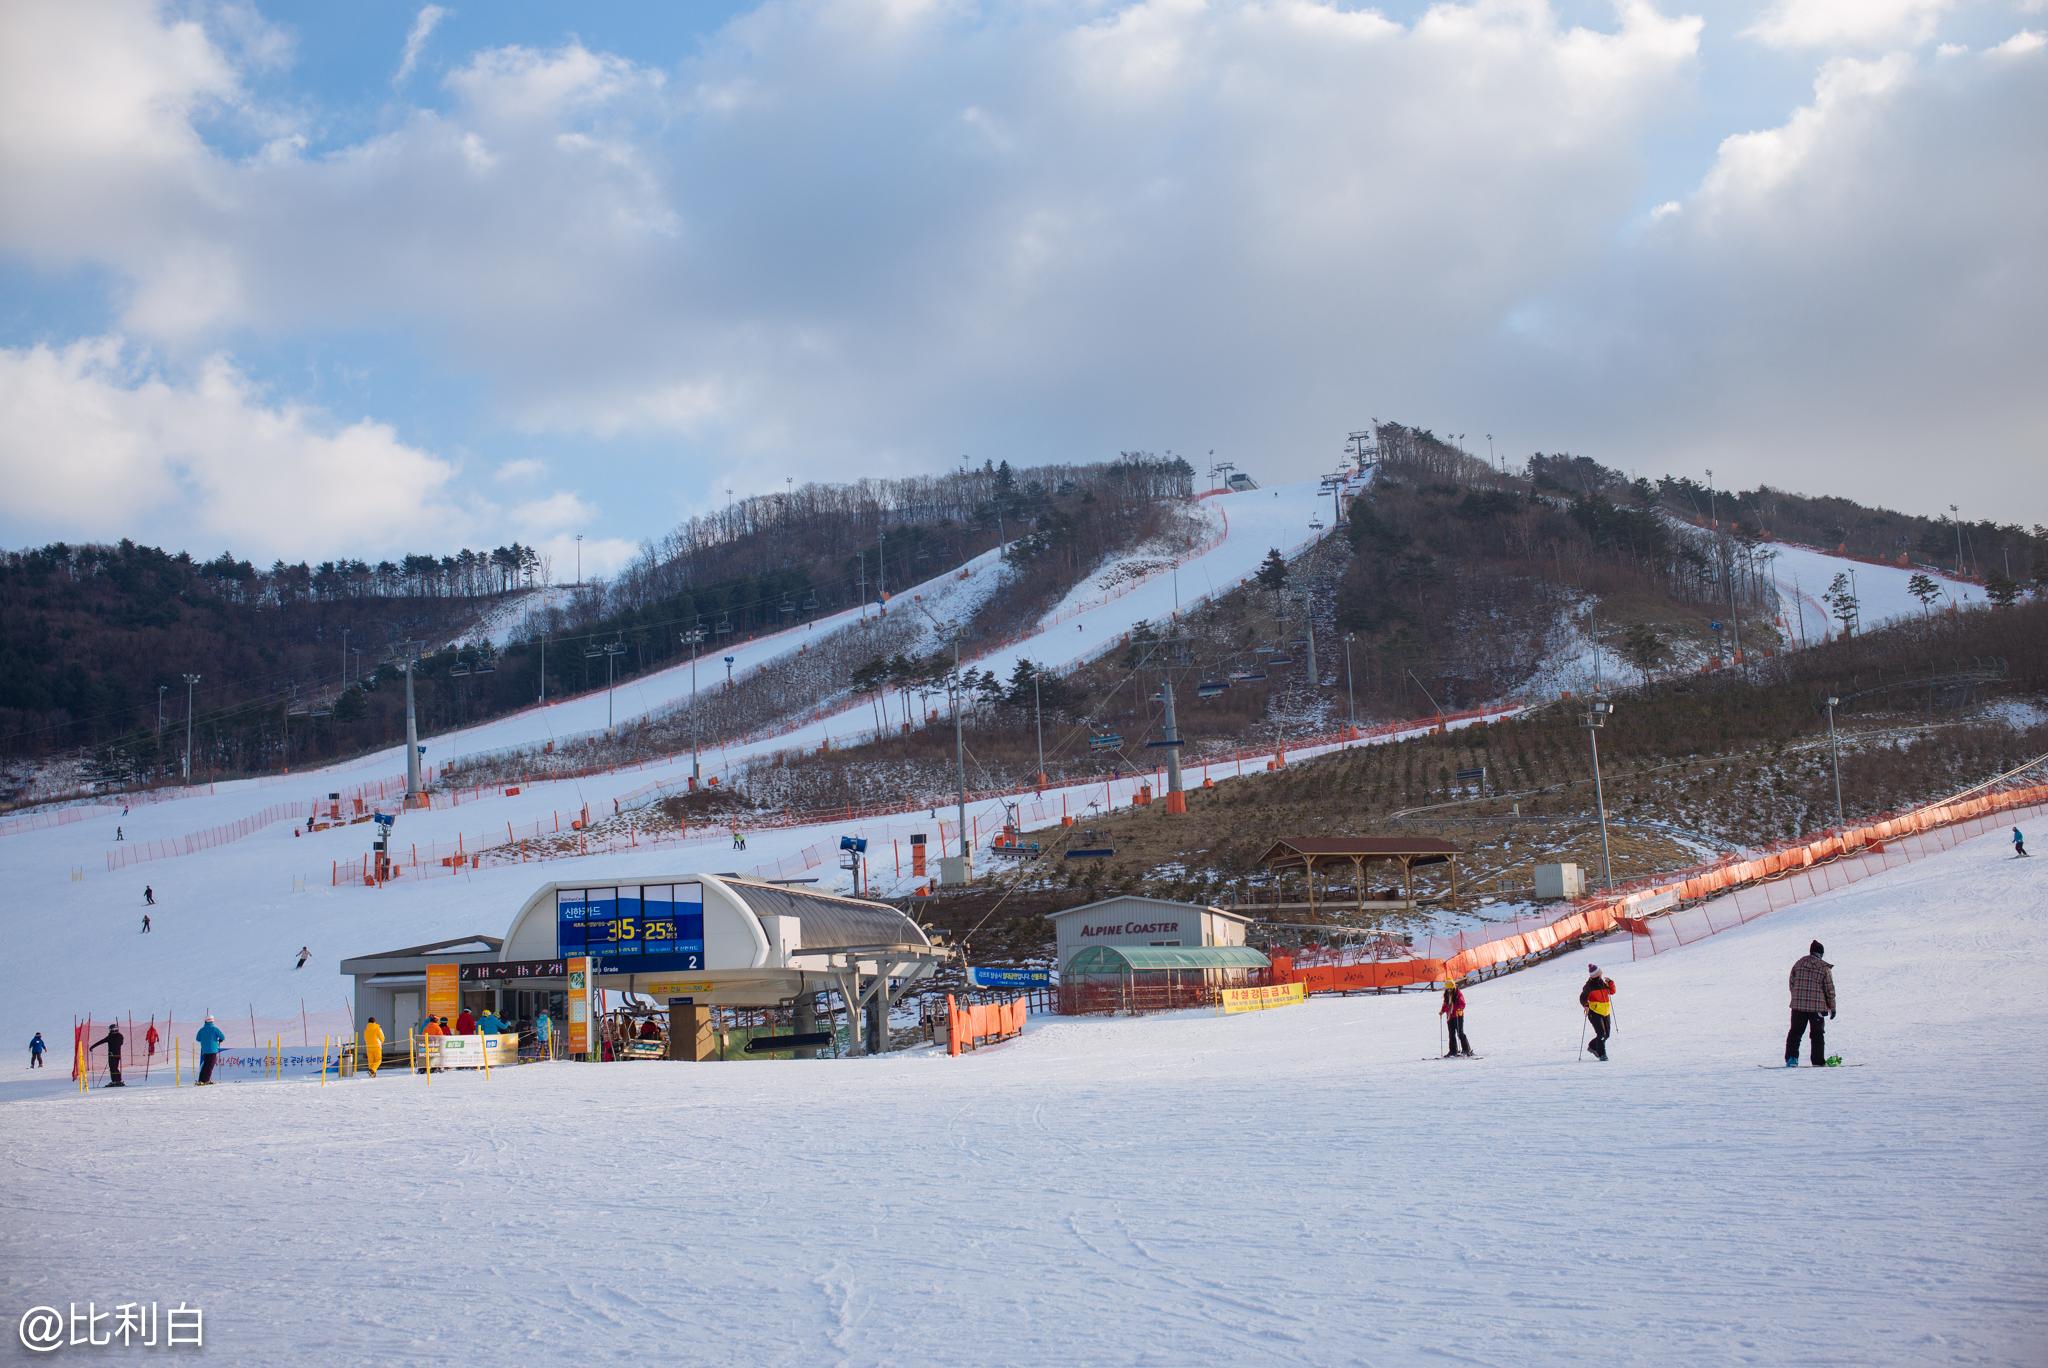 疯狂的夜场和诱人美食——韩国江原道滑雪记 - 知乎